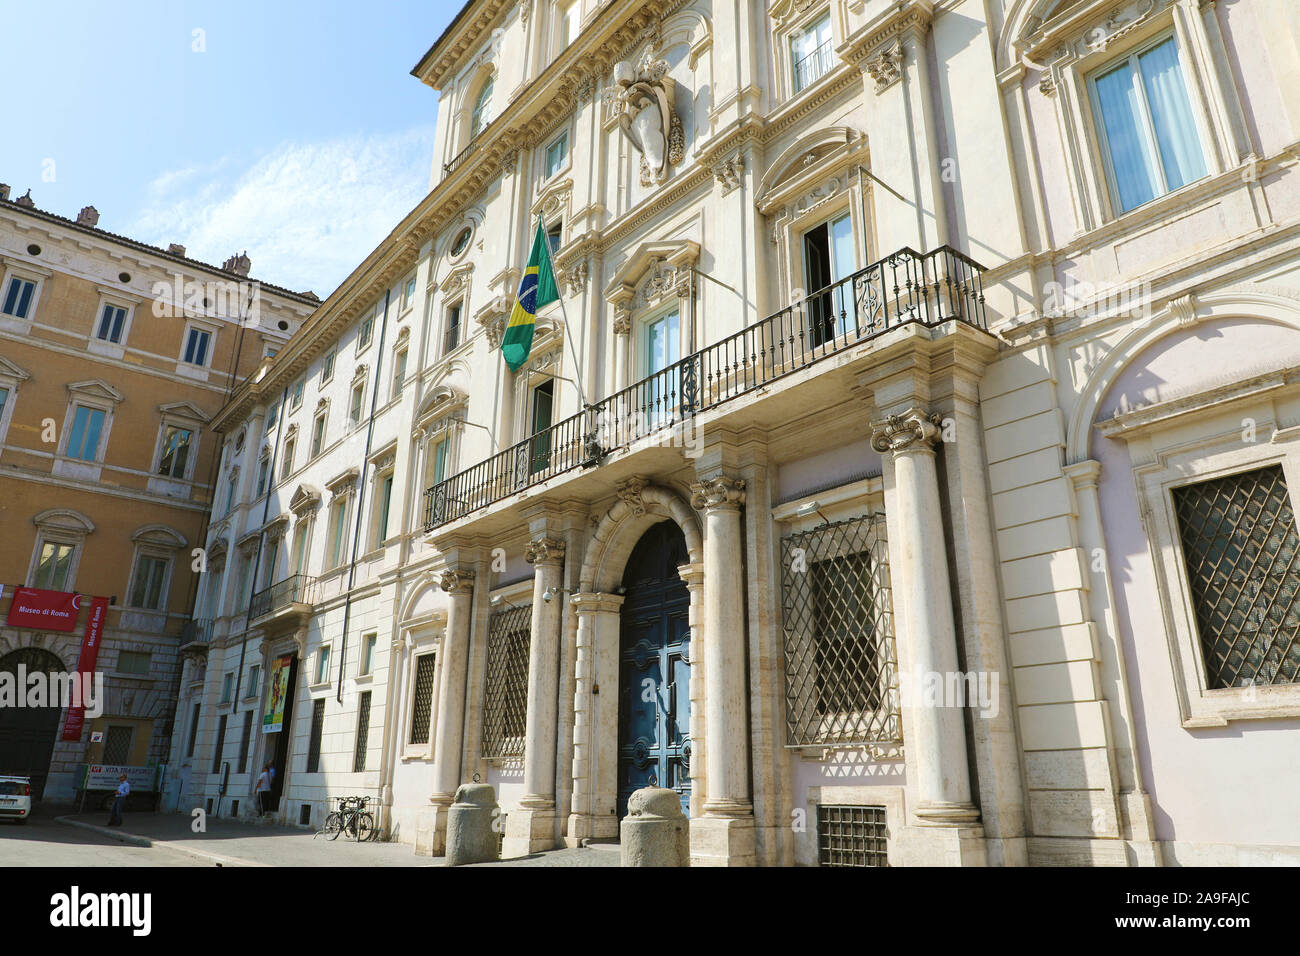 ROME, ITALY - SEPTEMBER 16, 2019: Brazilian Embassy in Rome in Piazza Navona Square, Italy. Stock Photo